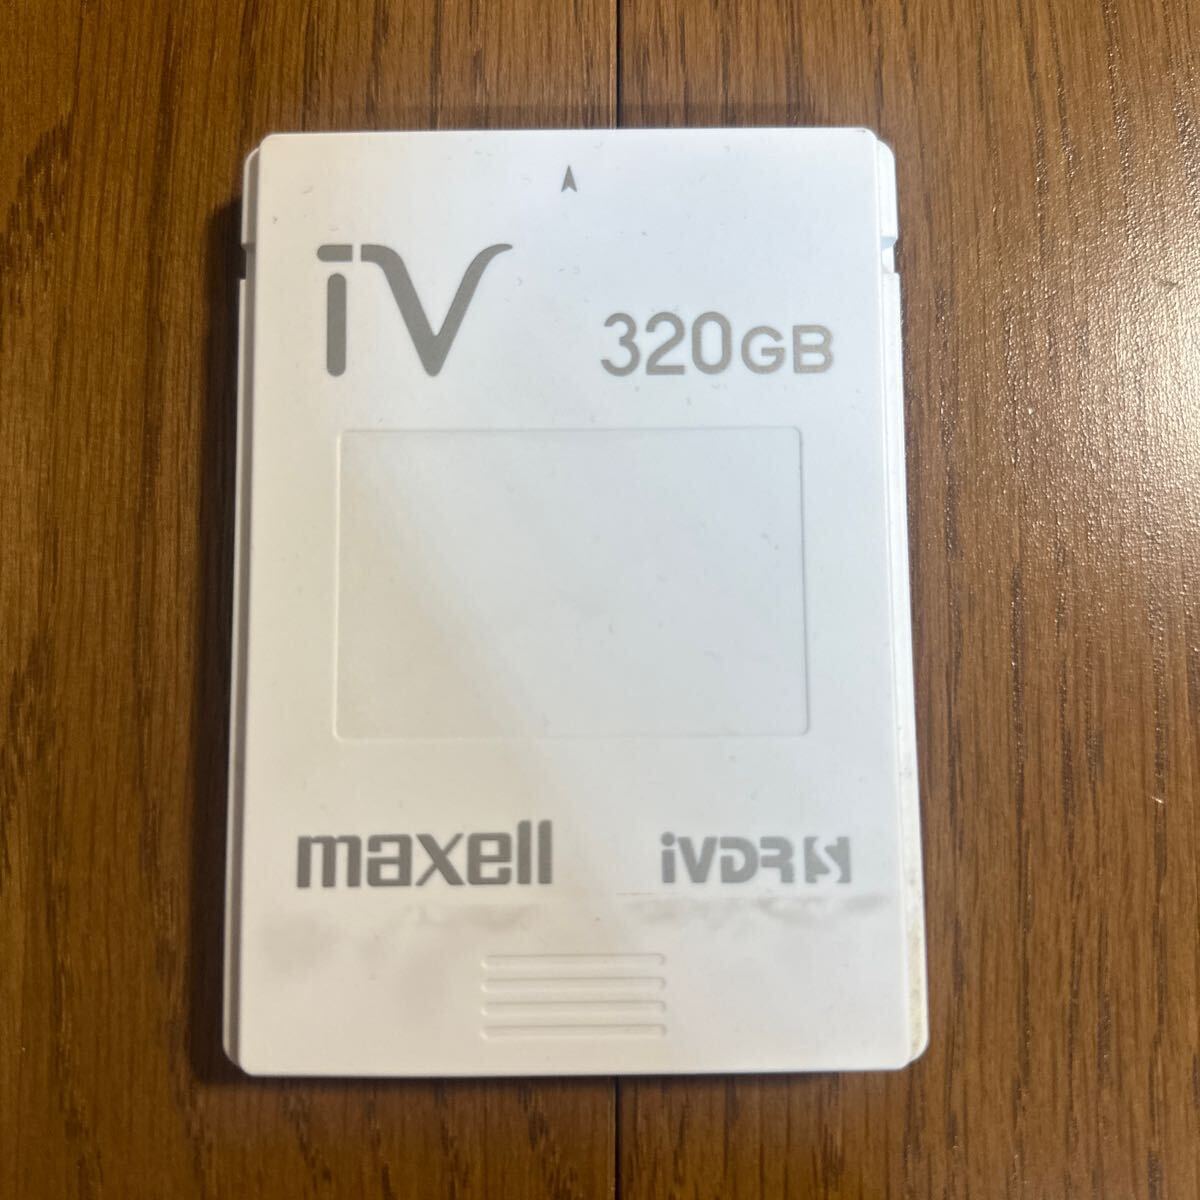 送料無料 iVDRS 320GB maxell マクセル カセットHDDの画像1